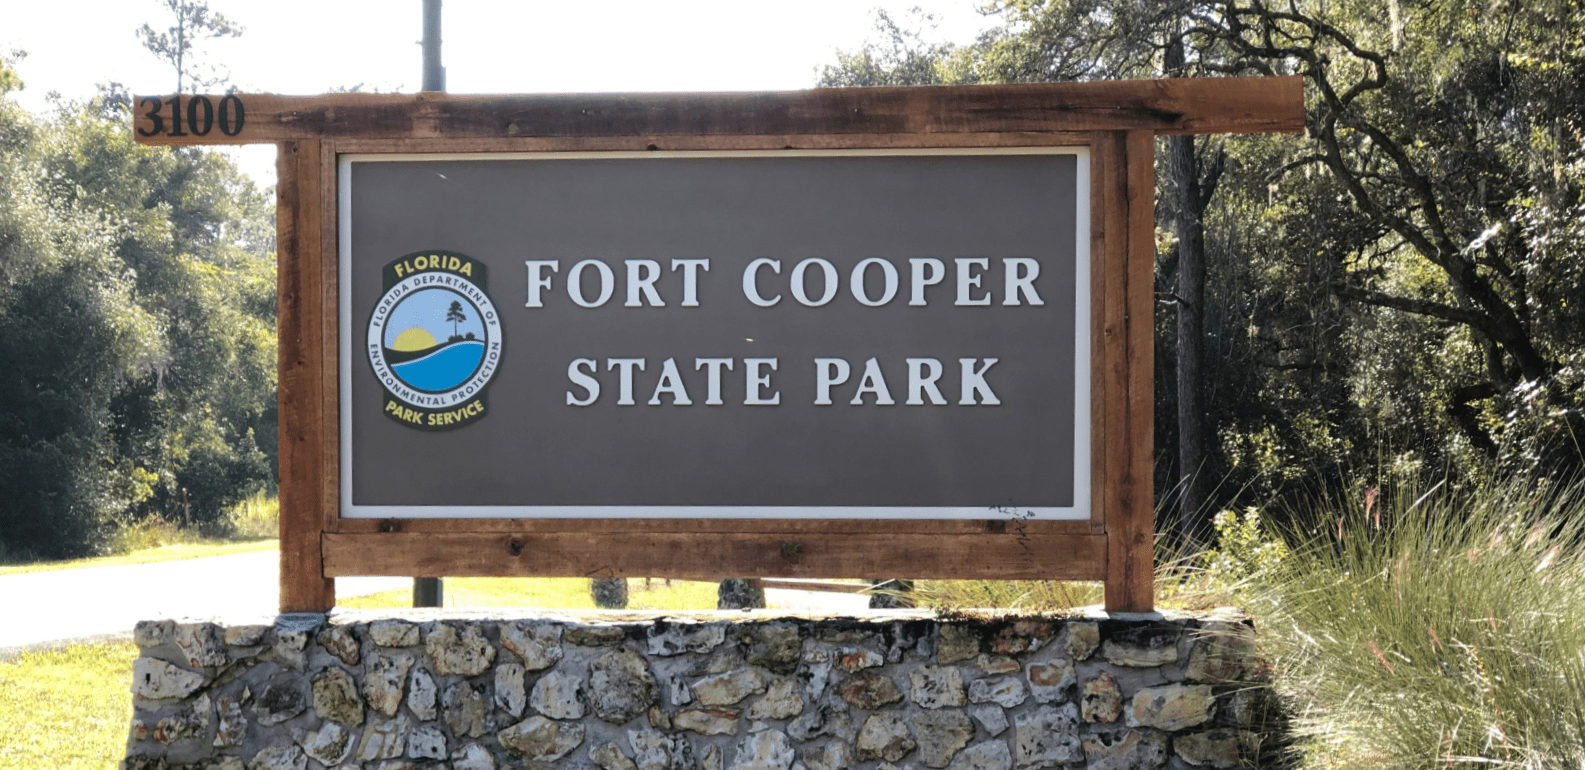 fort cooper state park sign